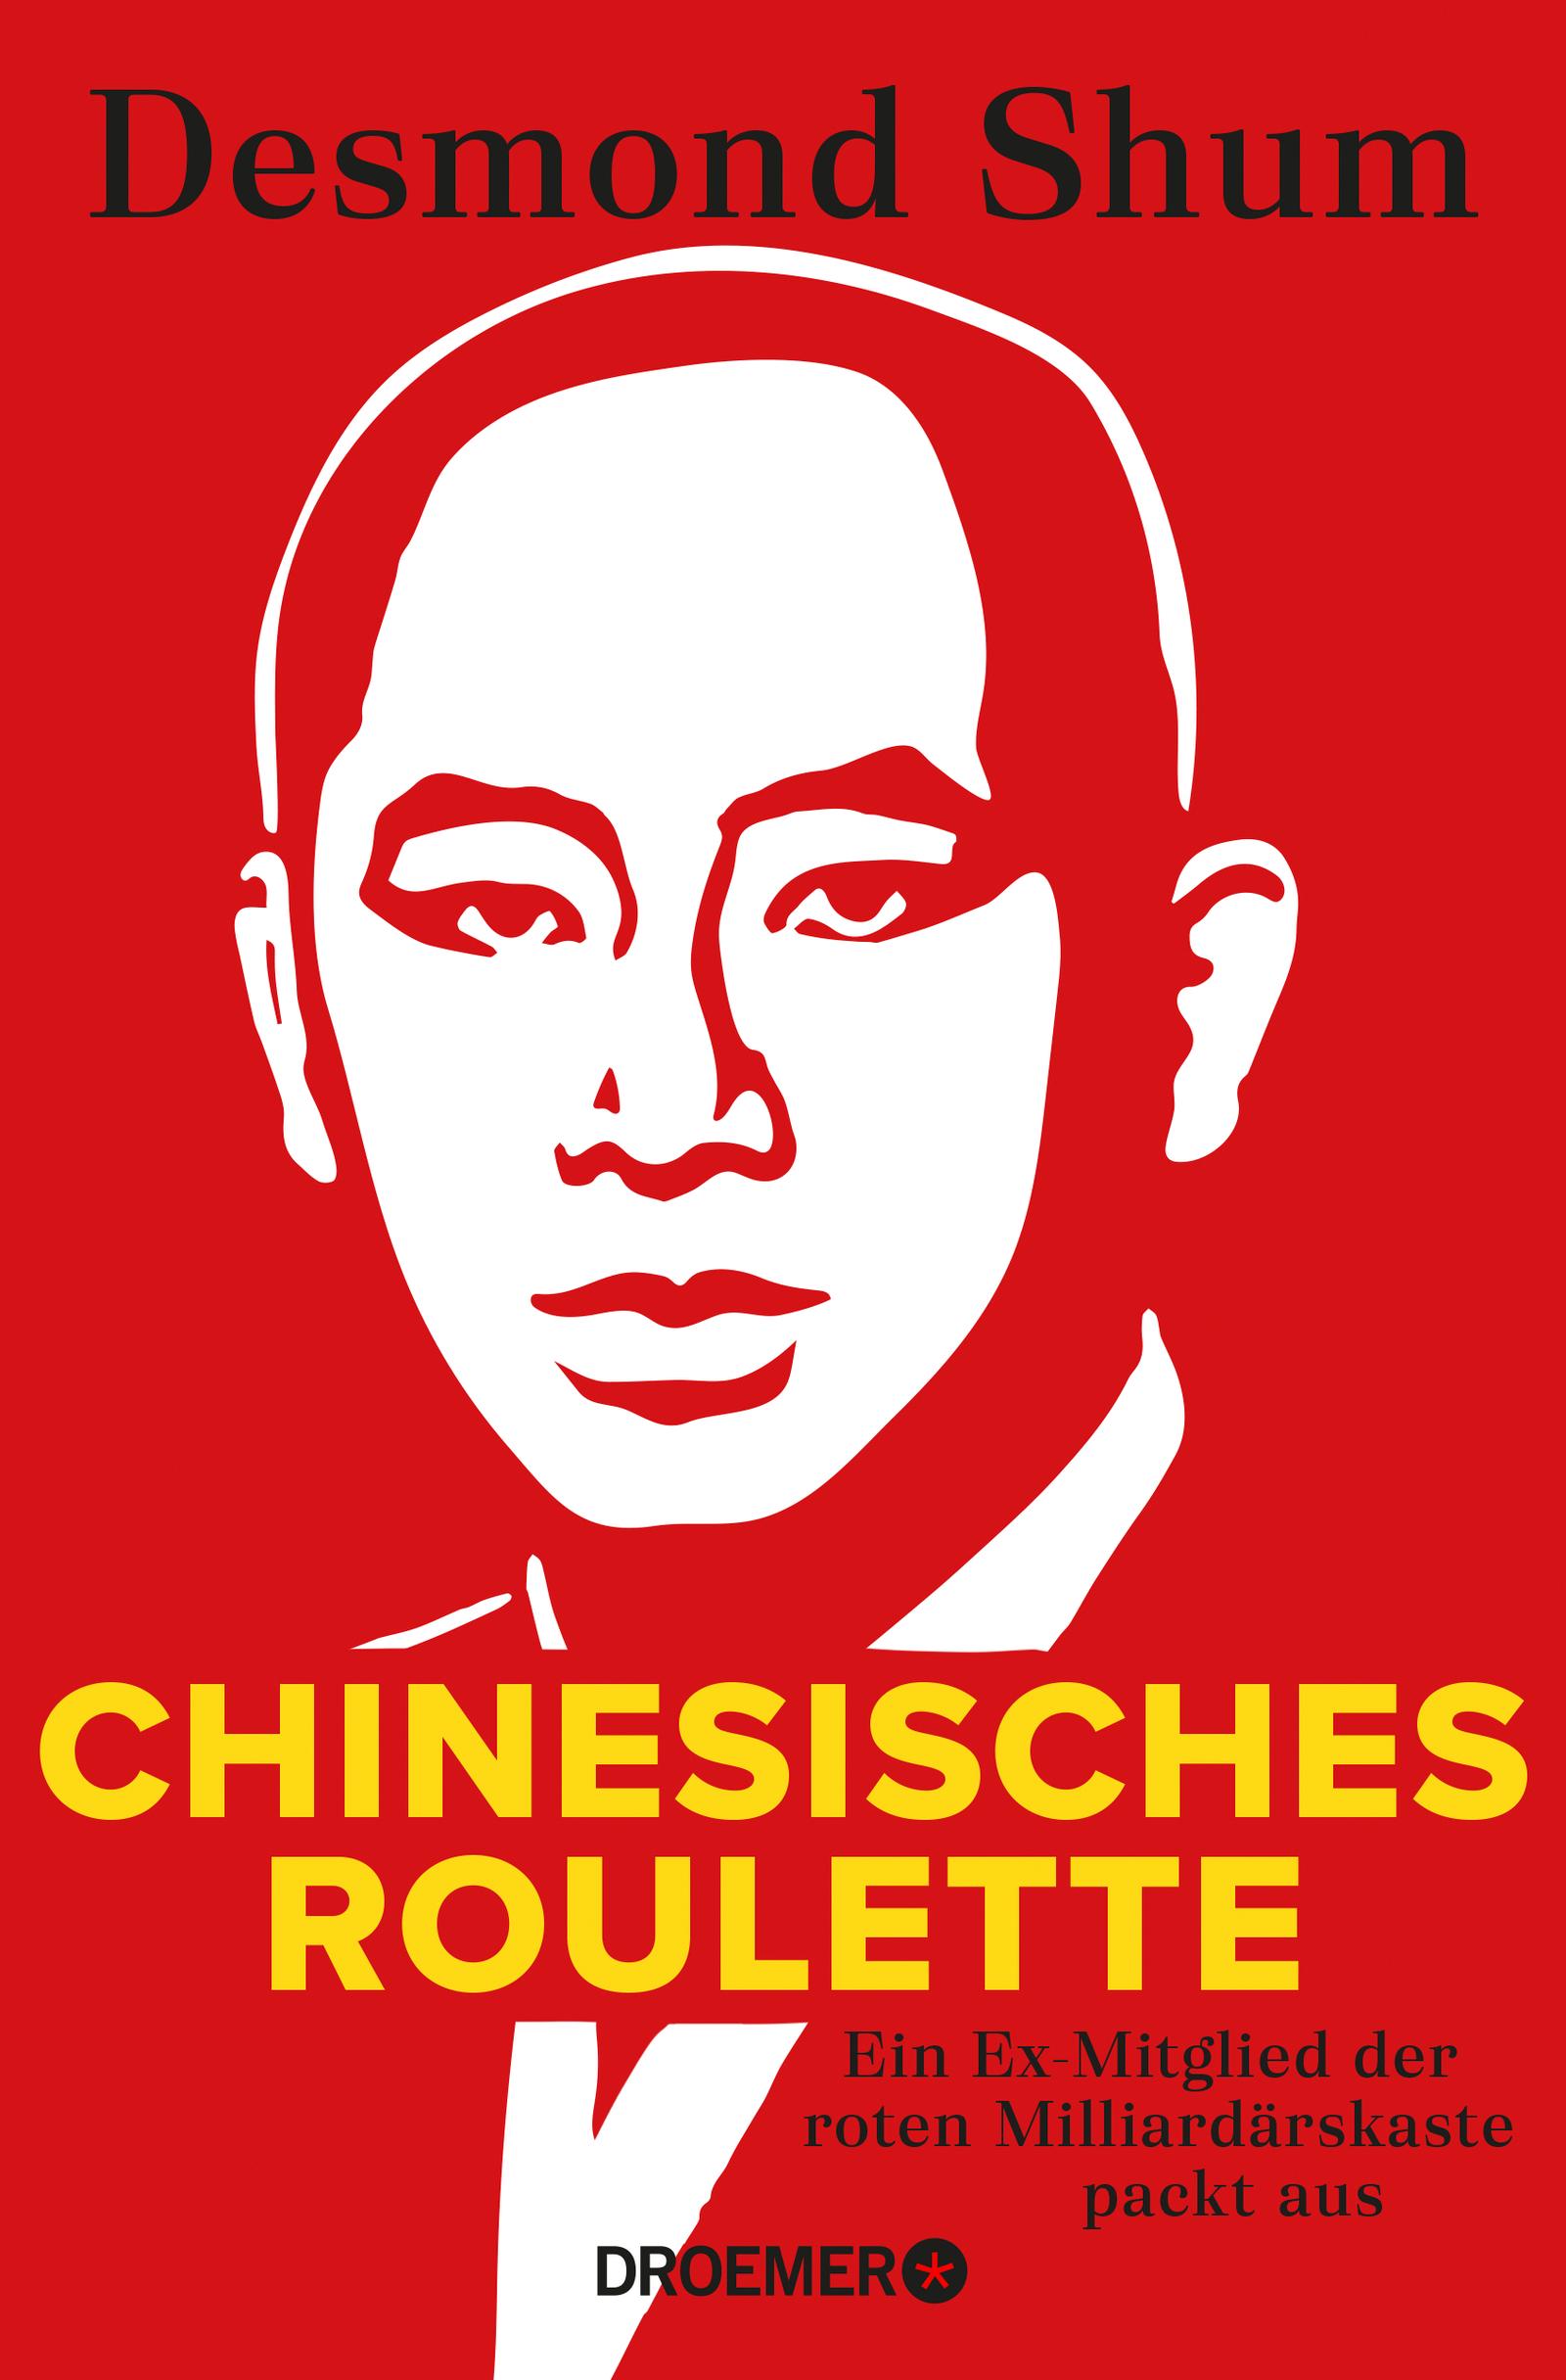 Chinesisches Roulette Ein Ex-Mitglied der roten Milliardärskaste packt aus. Der brisante Insiderbericht aus Chinas Elite